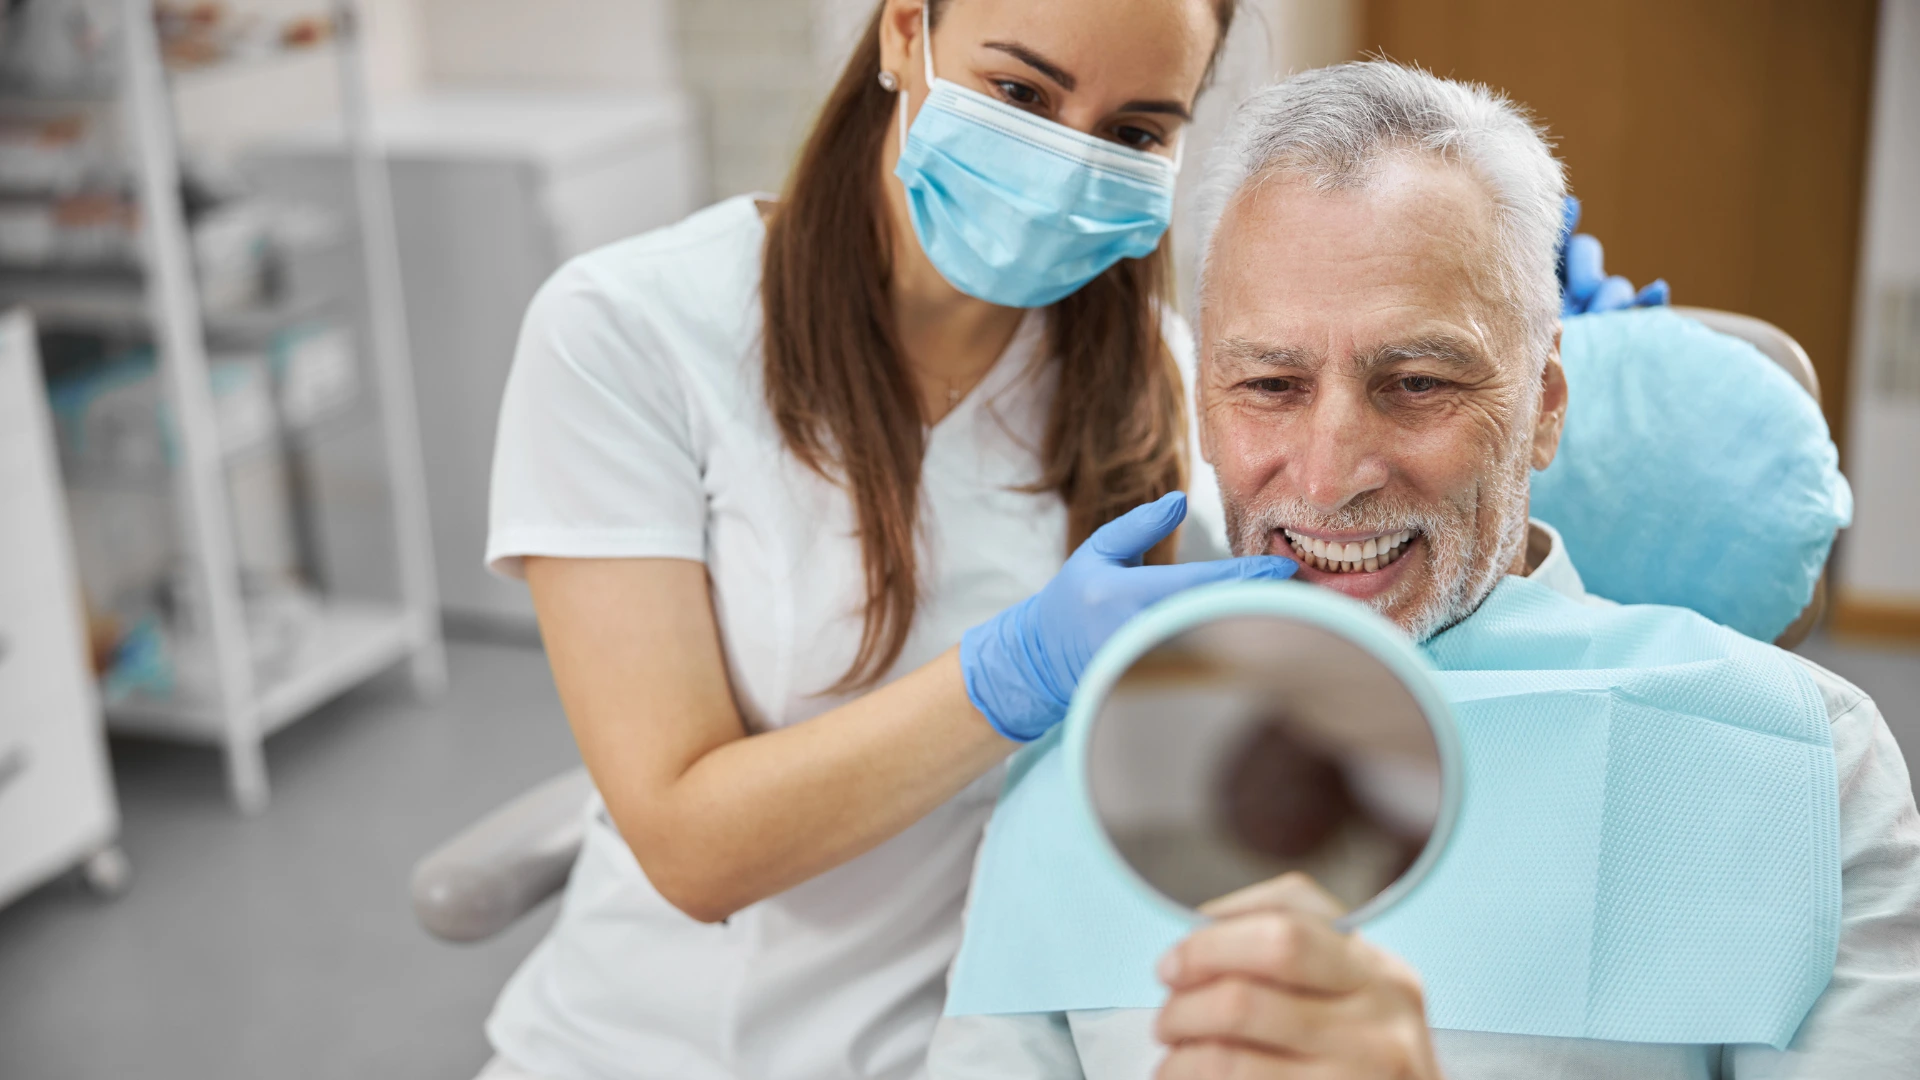 Impianti dentali - Quali sono i rischi dell'impianto dentale